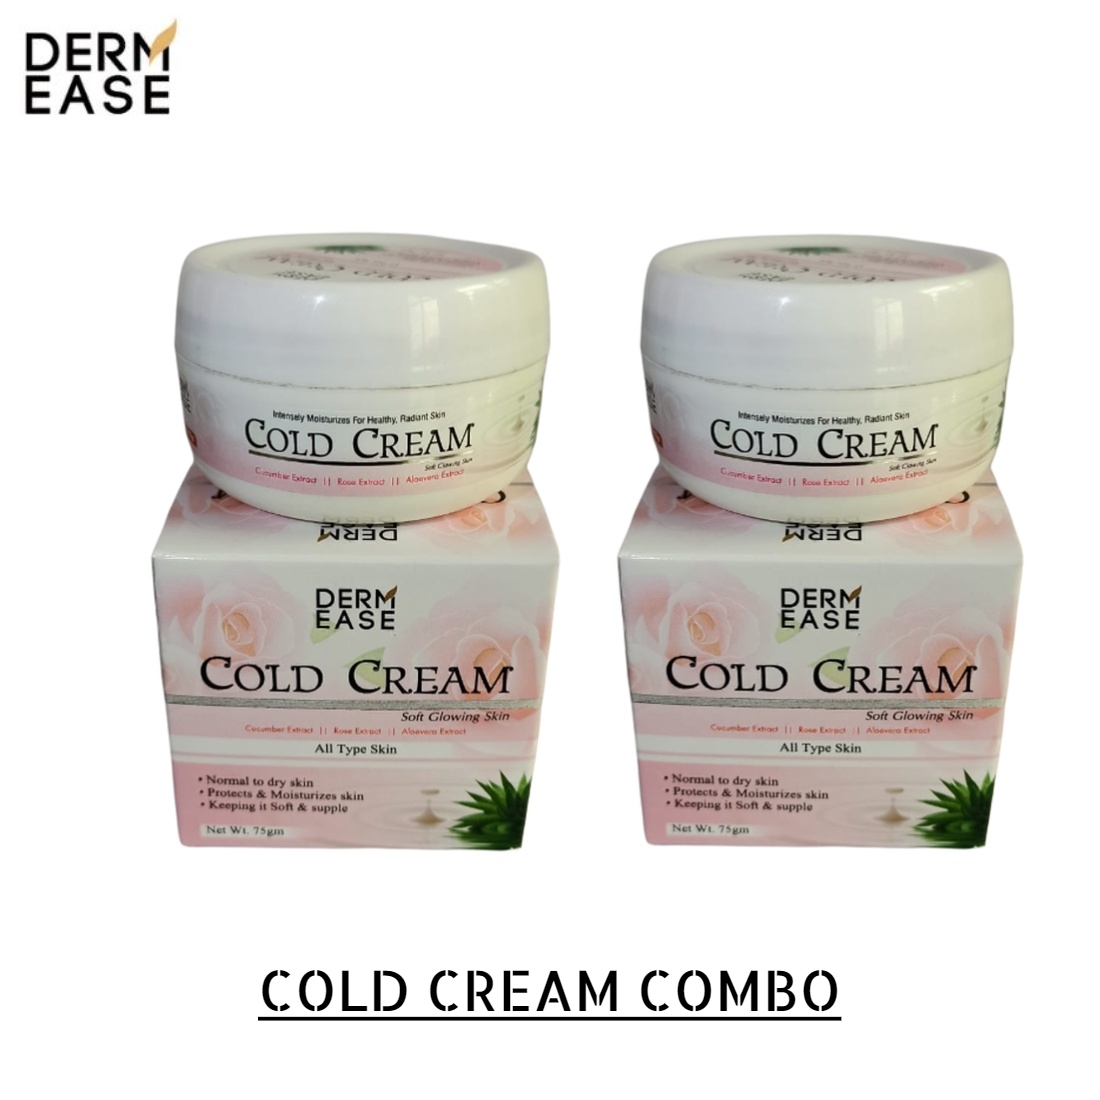 DERM EASE Cold Cream Combo